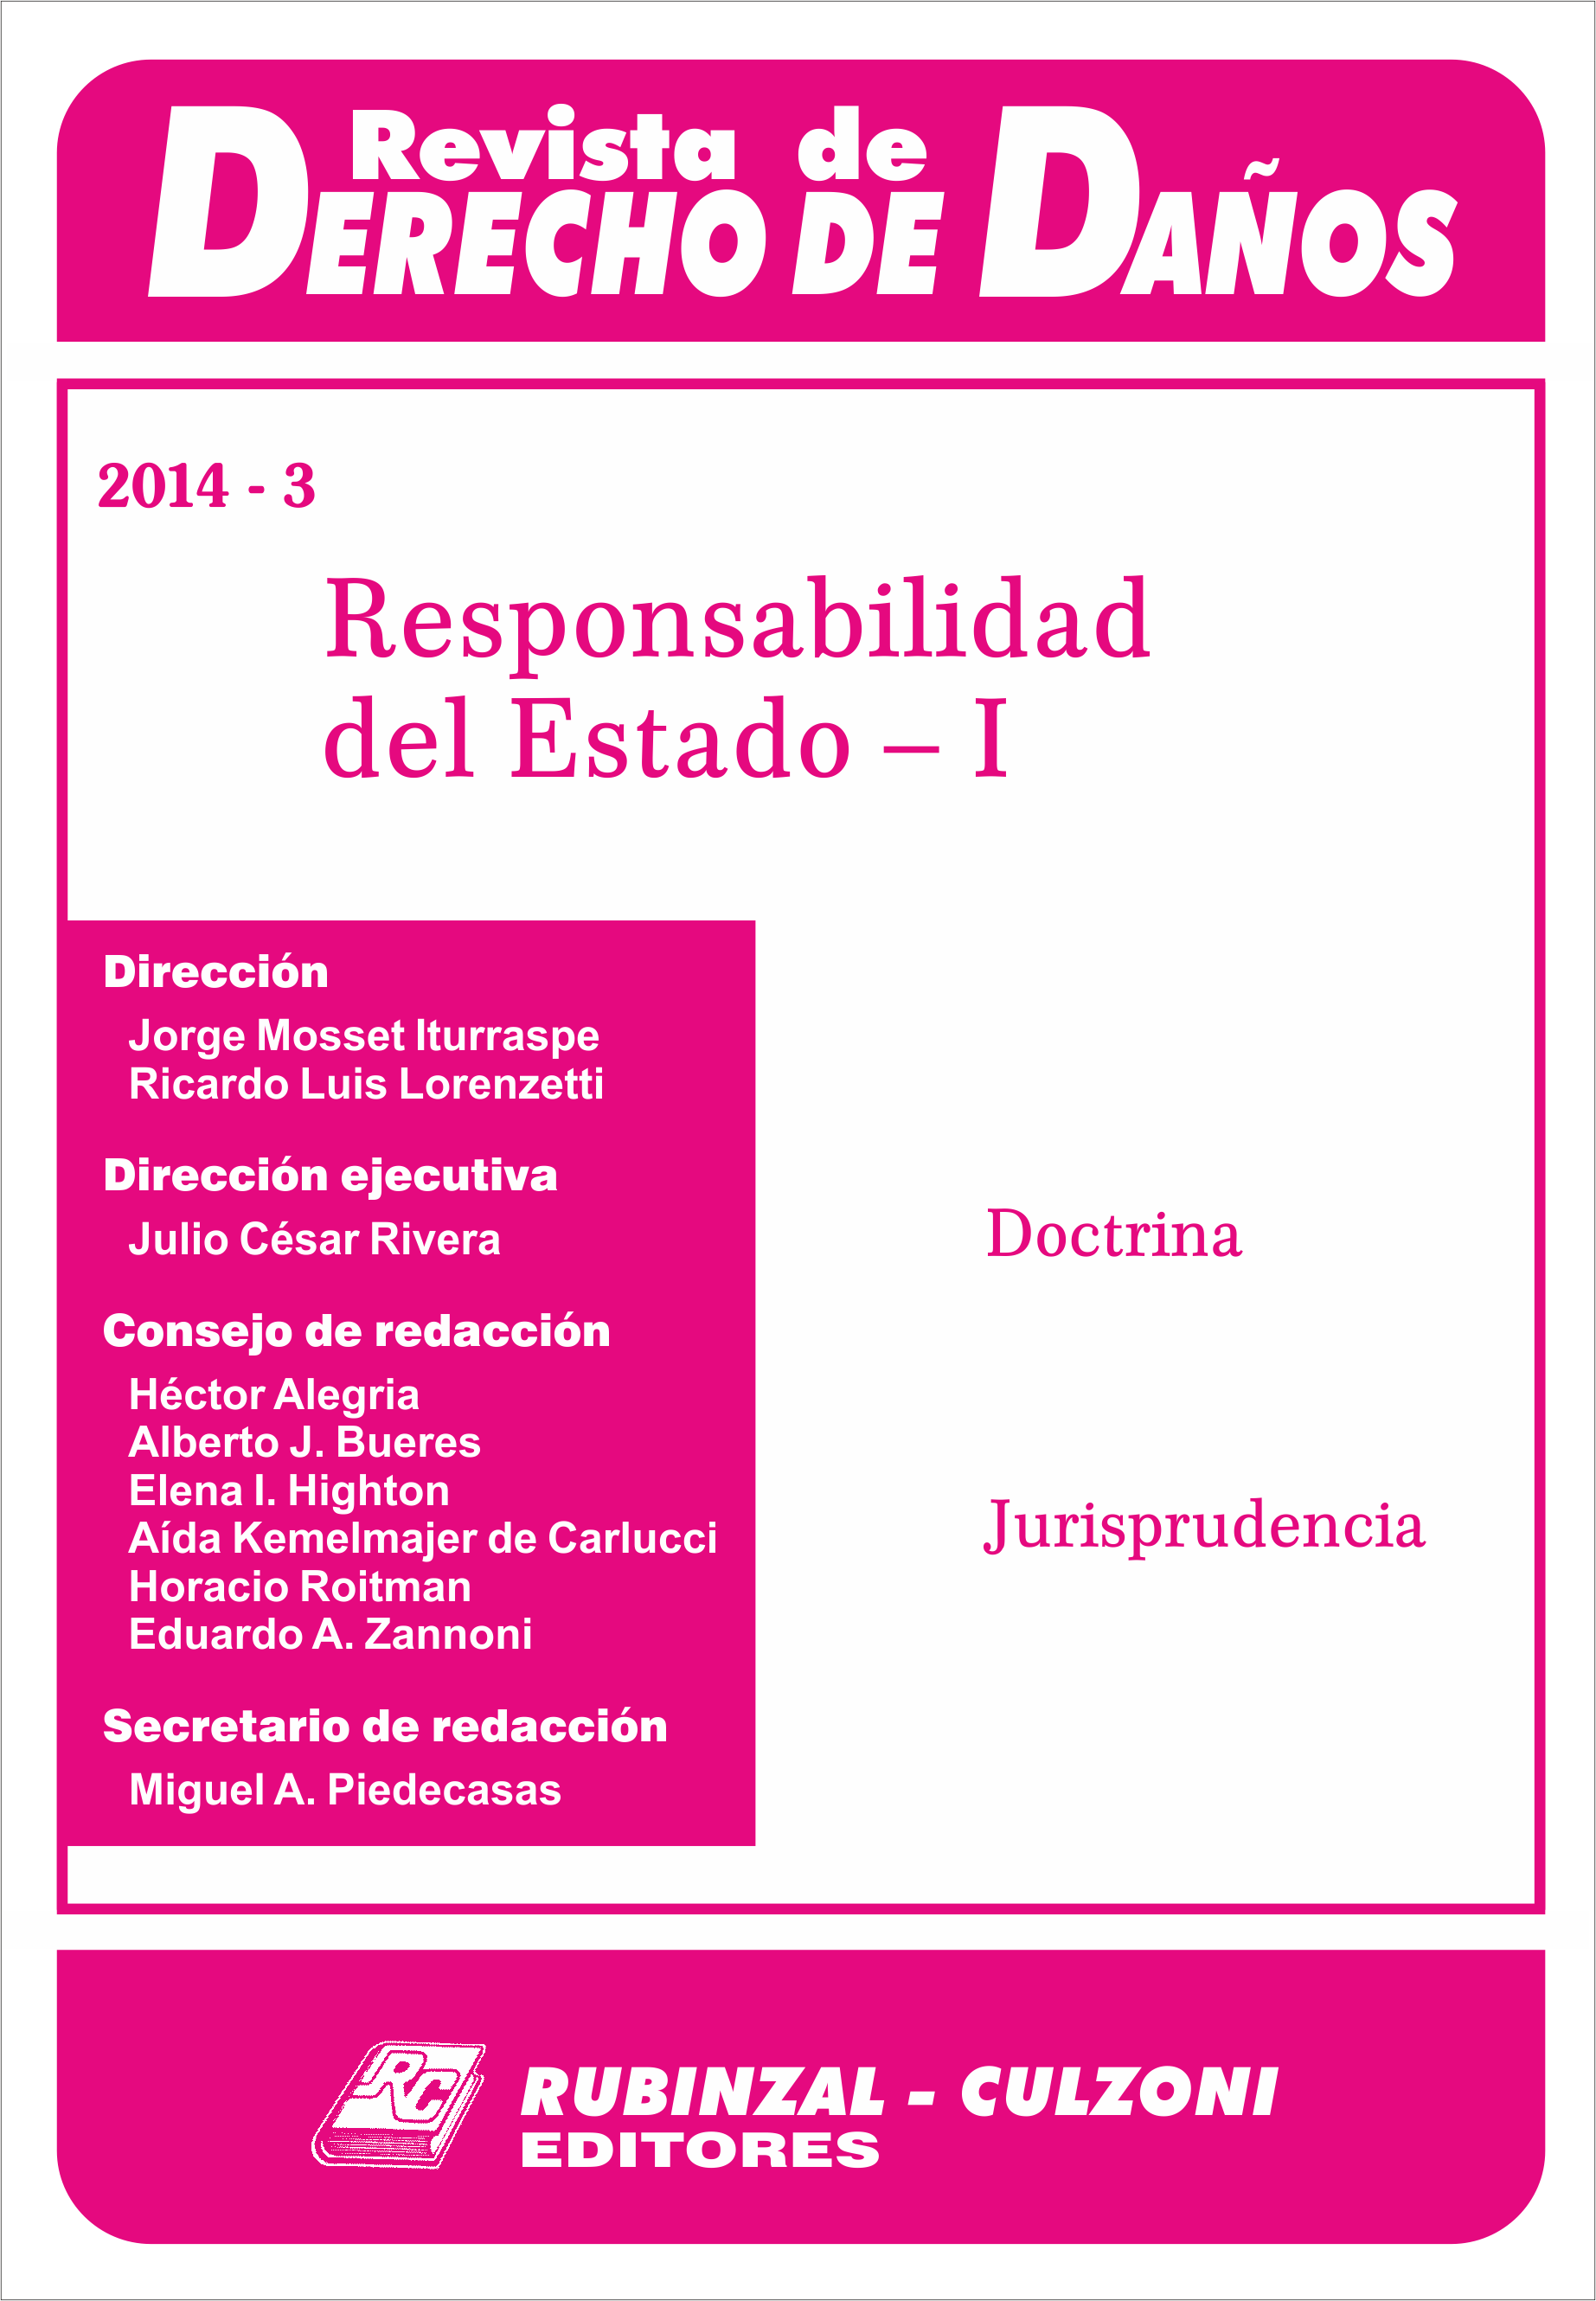 Revista de Derecho de Daños - Responsabilidad del Estado - I